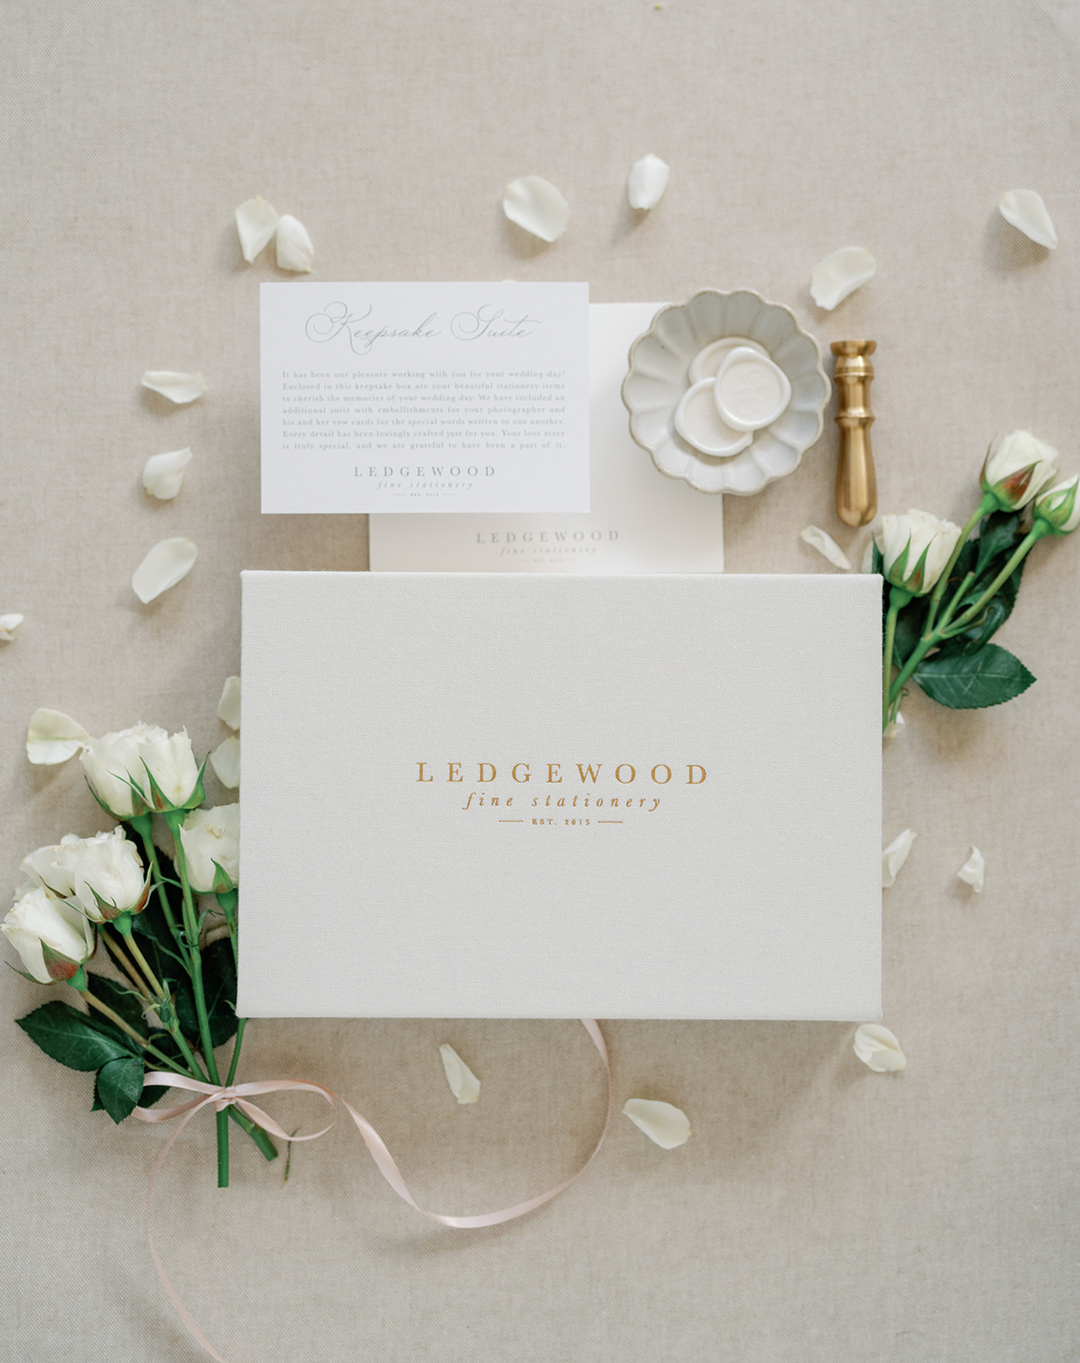 Ledgewood-Fine-Stationery-Luxury-Wedding-Invitations5